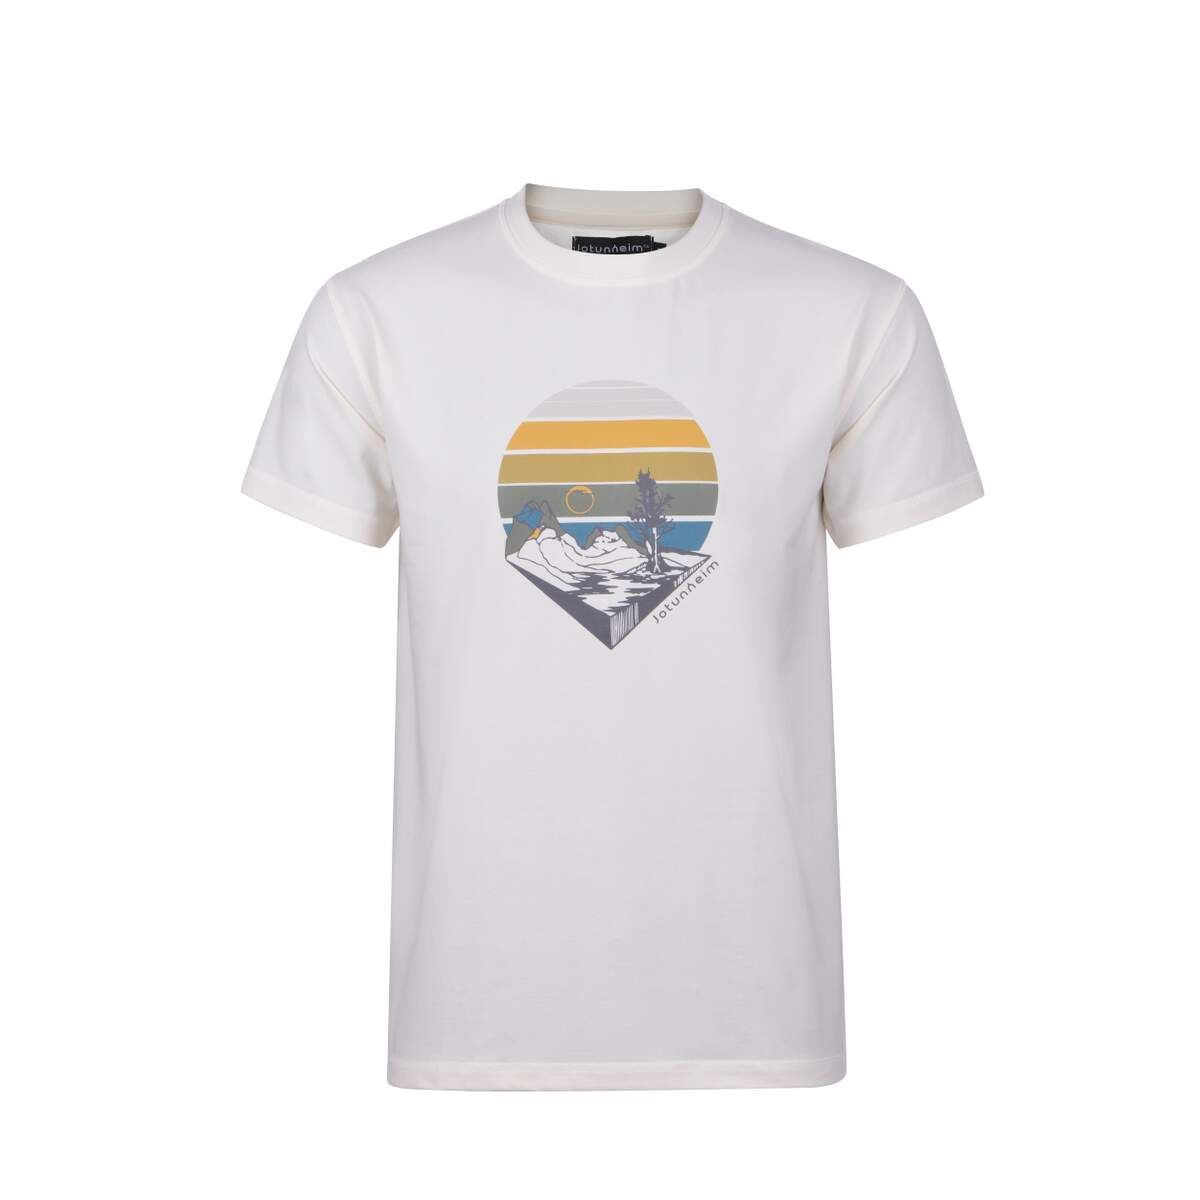 jotunheim-varde-t-shirt-m-print-jotunheimgardenia_1